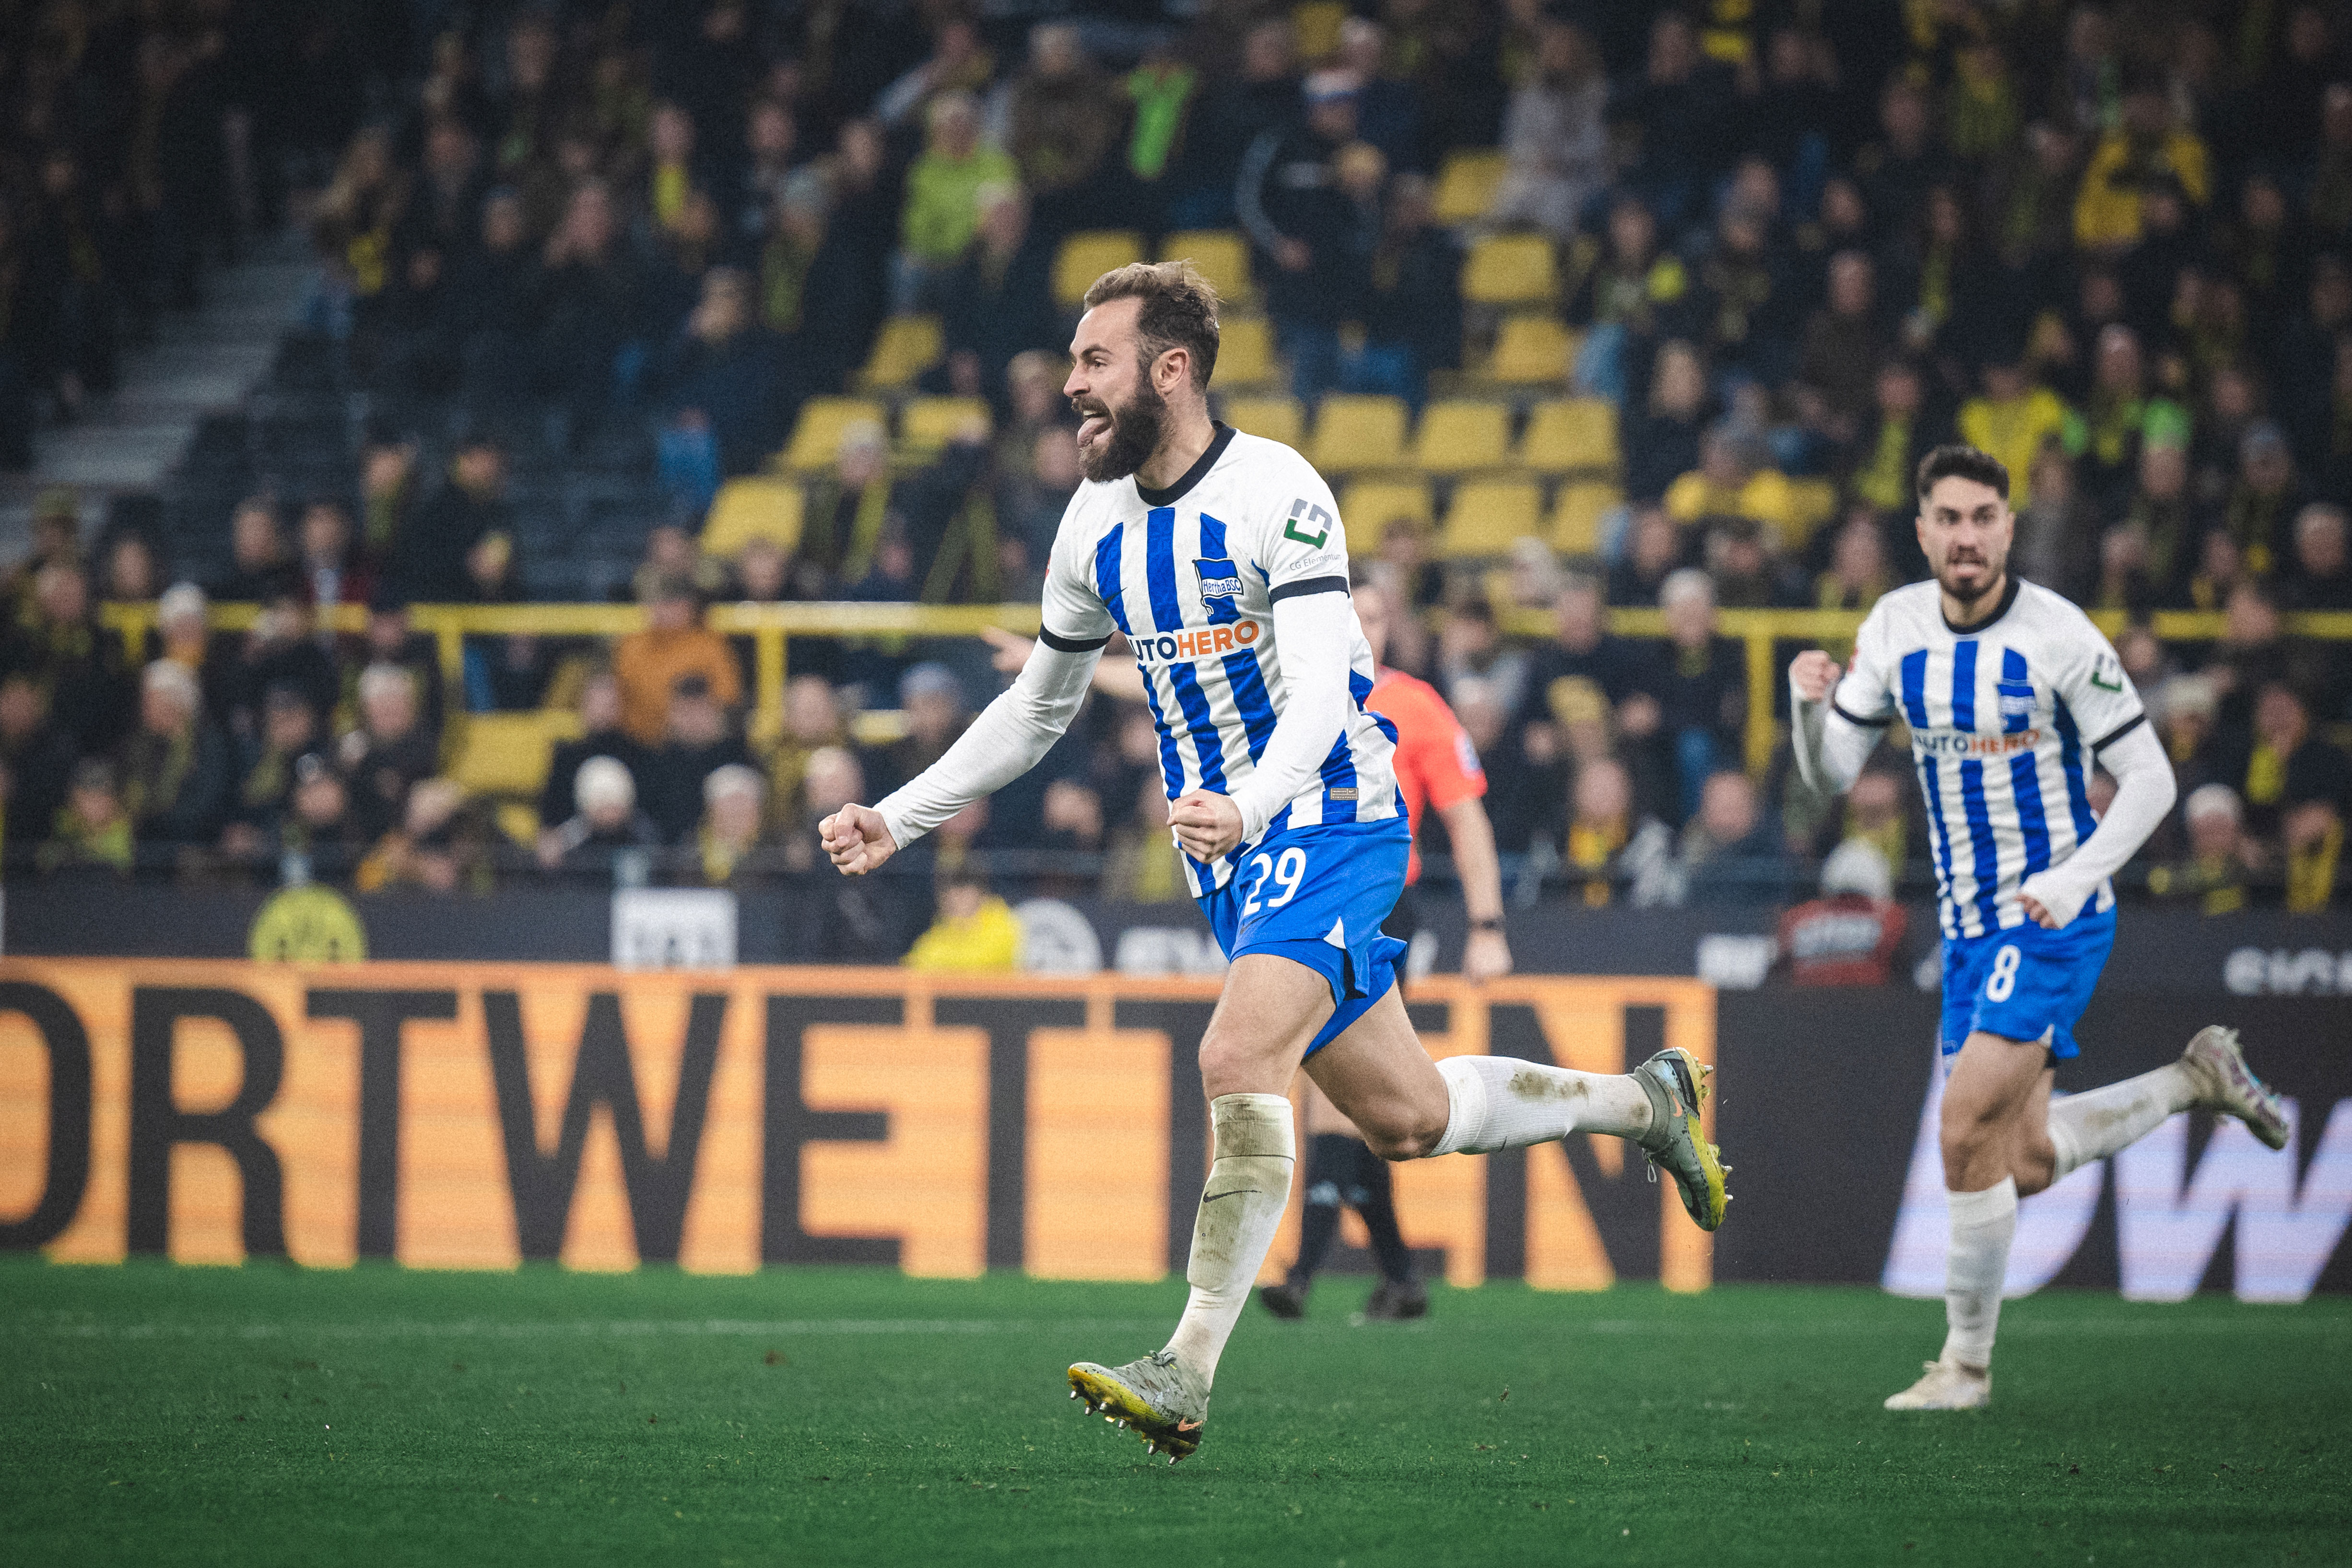 Lucas Tousart celebrating his goal against Dortmund.